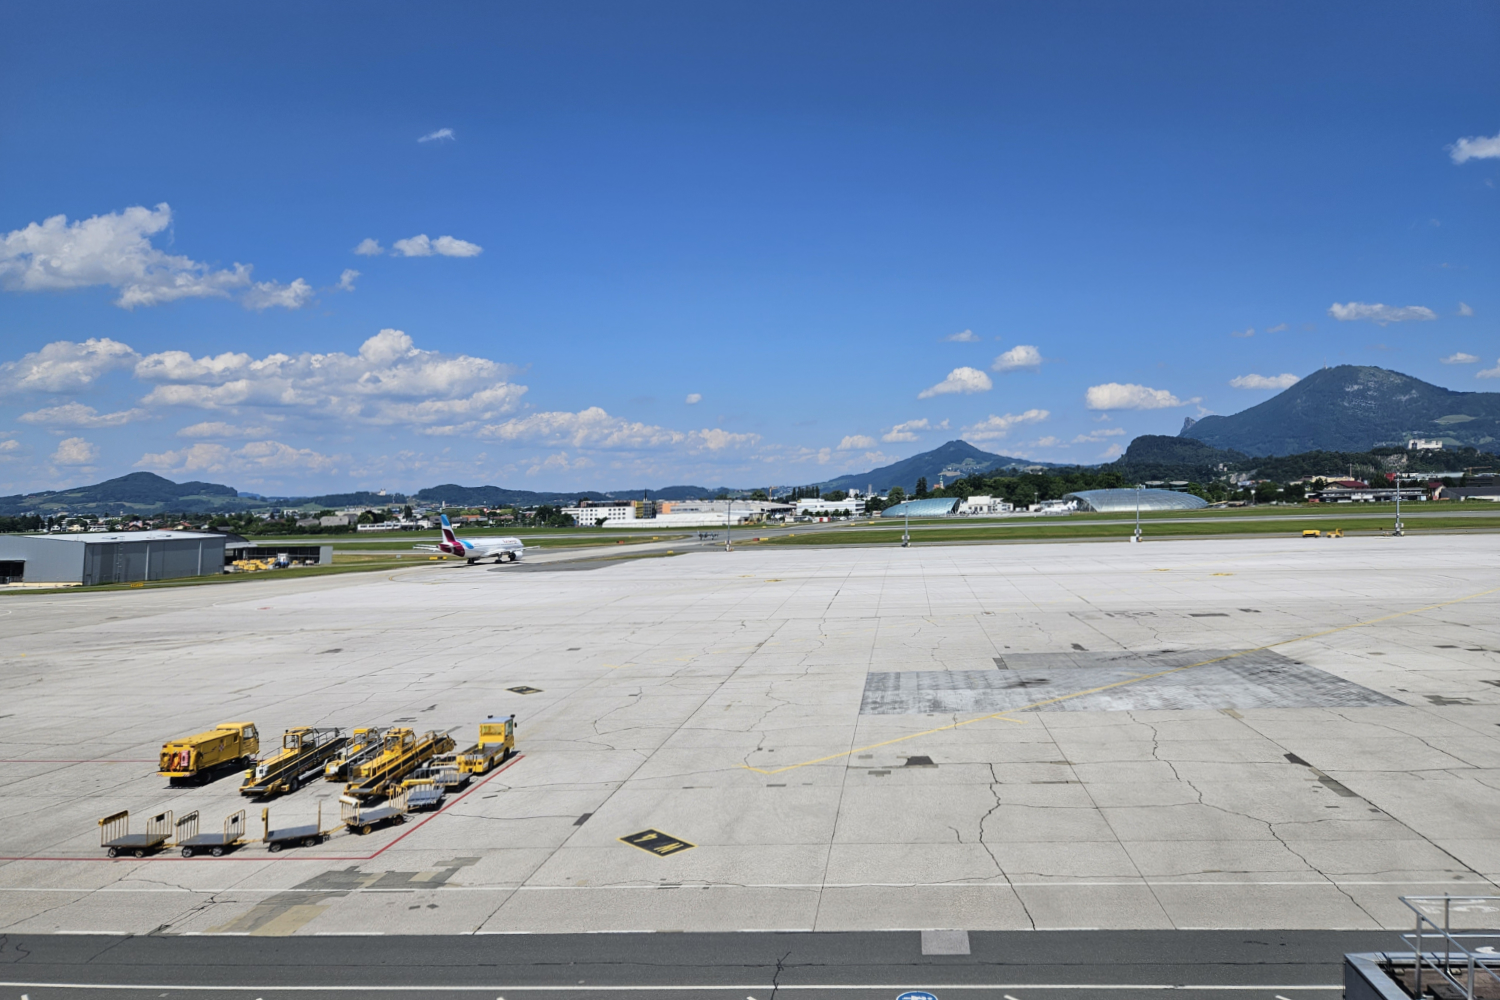 Reisepläne? - Flughafen Salzburg Mastaplan GmbH